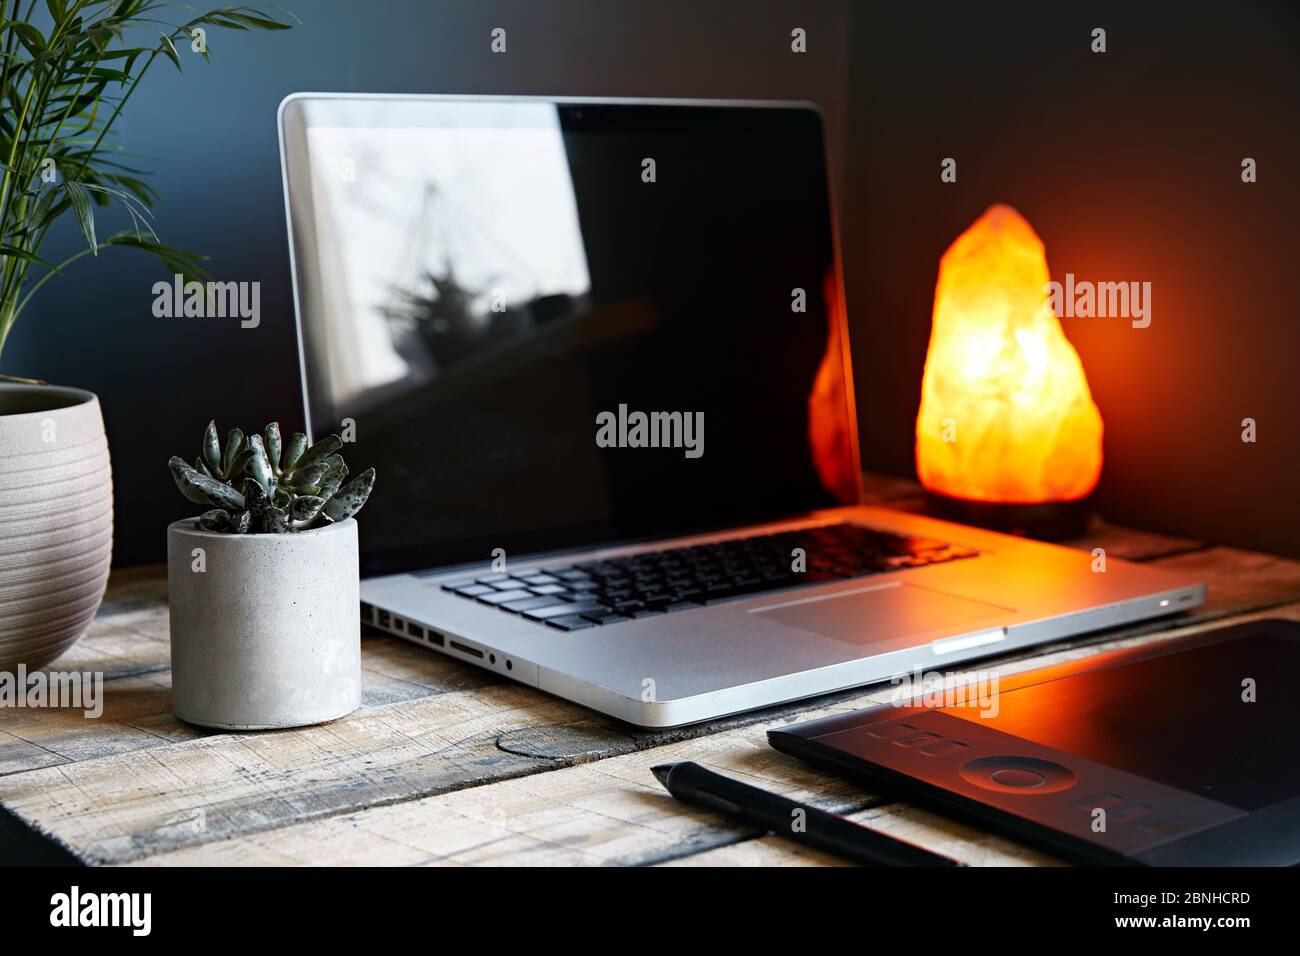 Espace de travail confortable avec ordinateur portable, tablette graphique, plantes et lampe jaune sur fond de mur gris pierre. Concept de travail à domicile. Banque D'Images